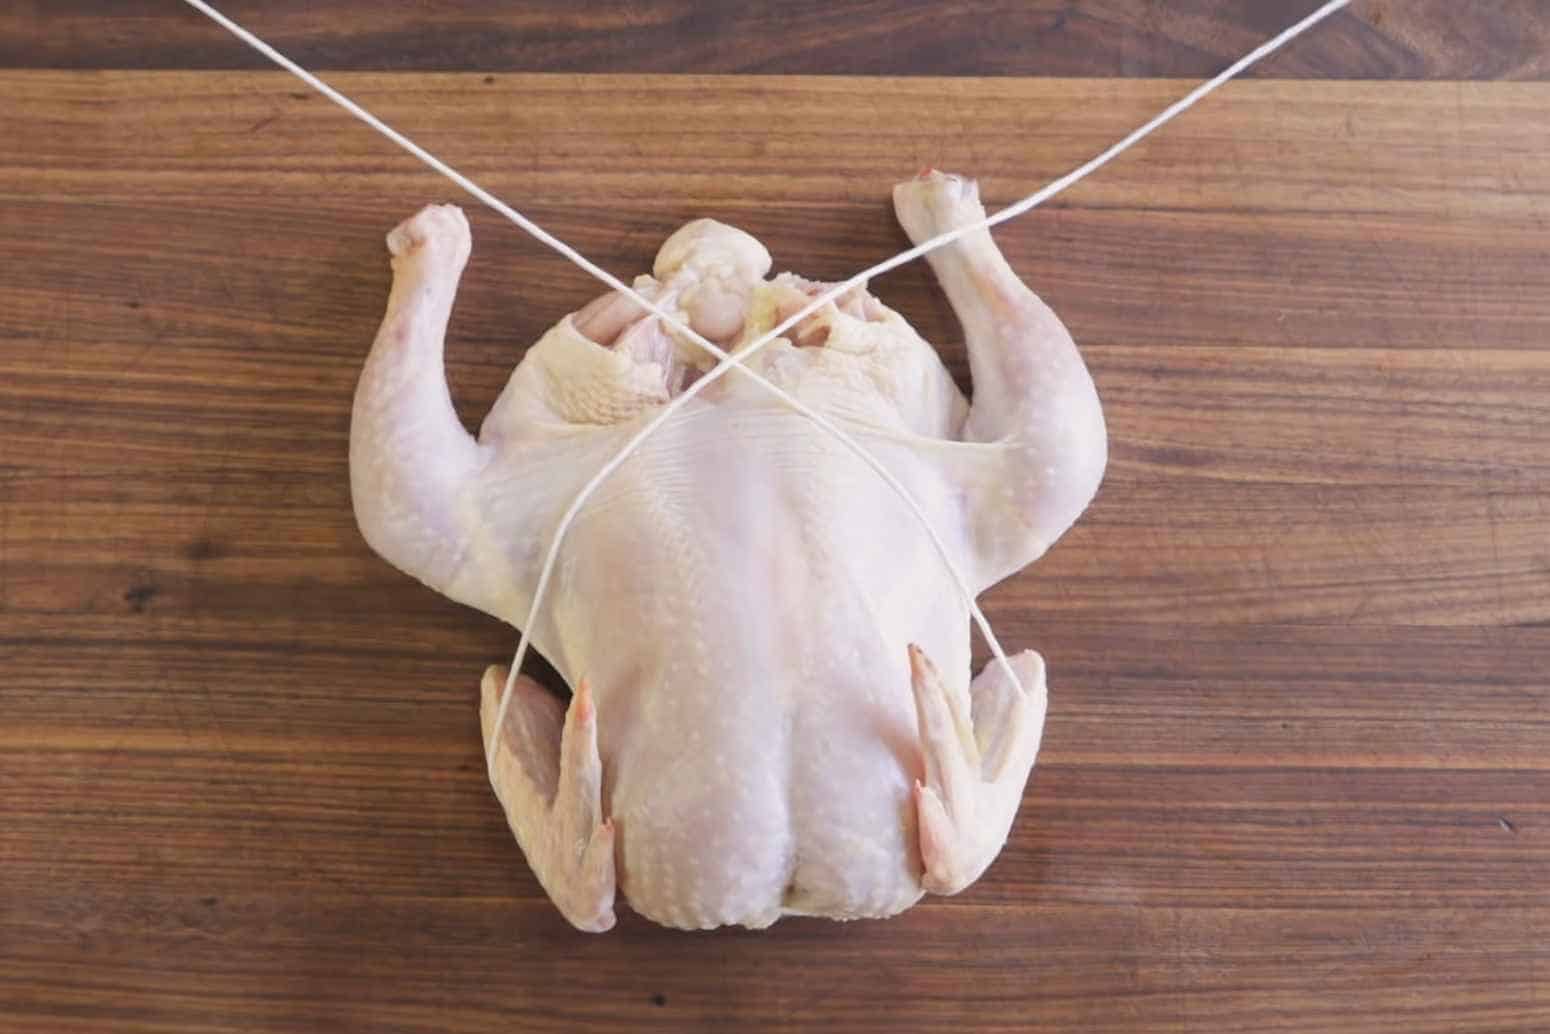 Run the String Under the Chicken